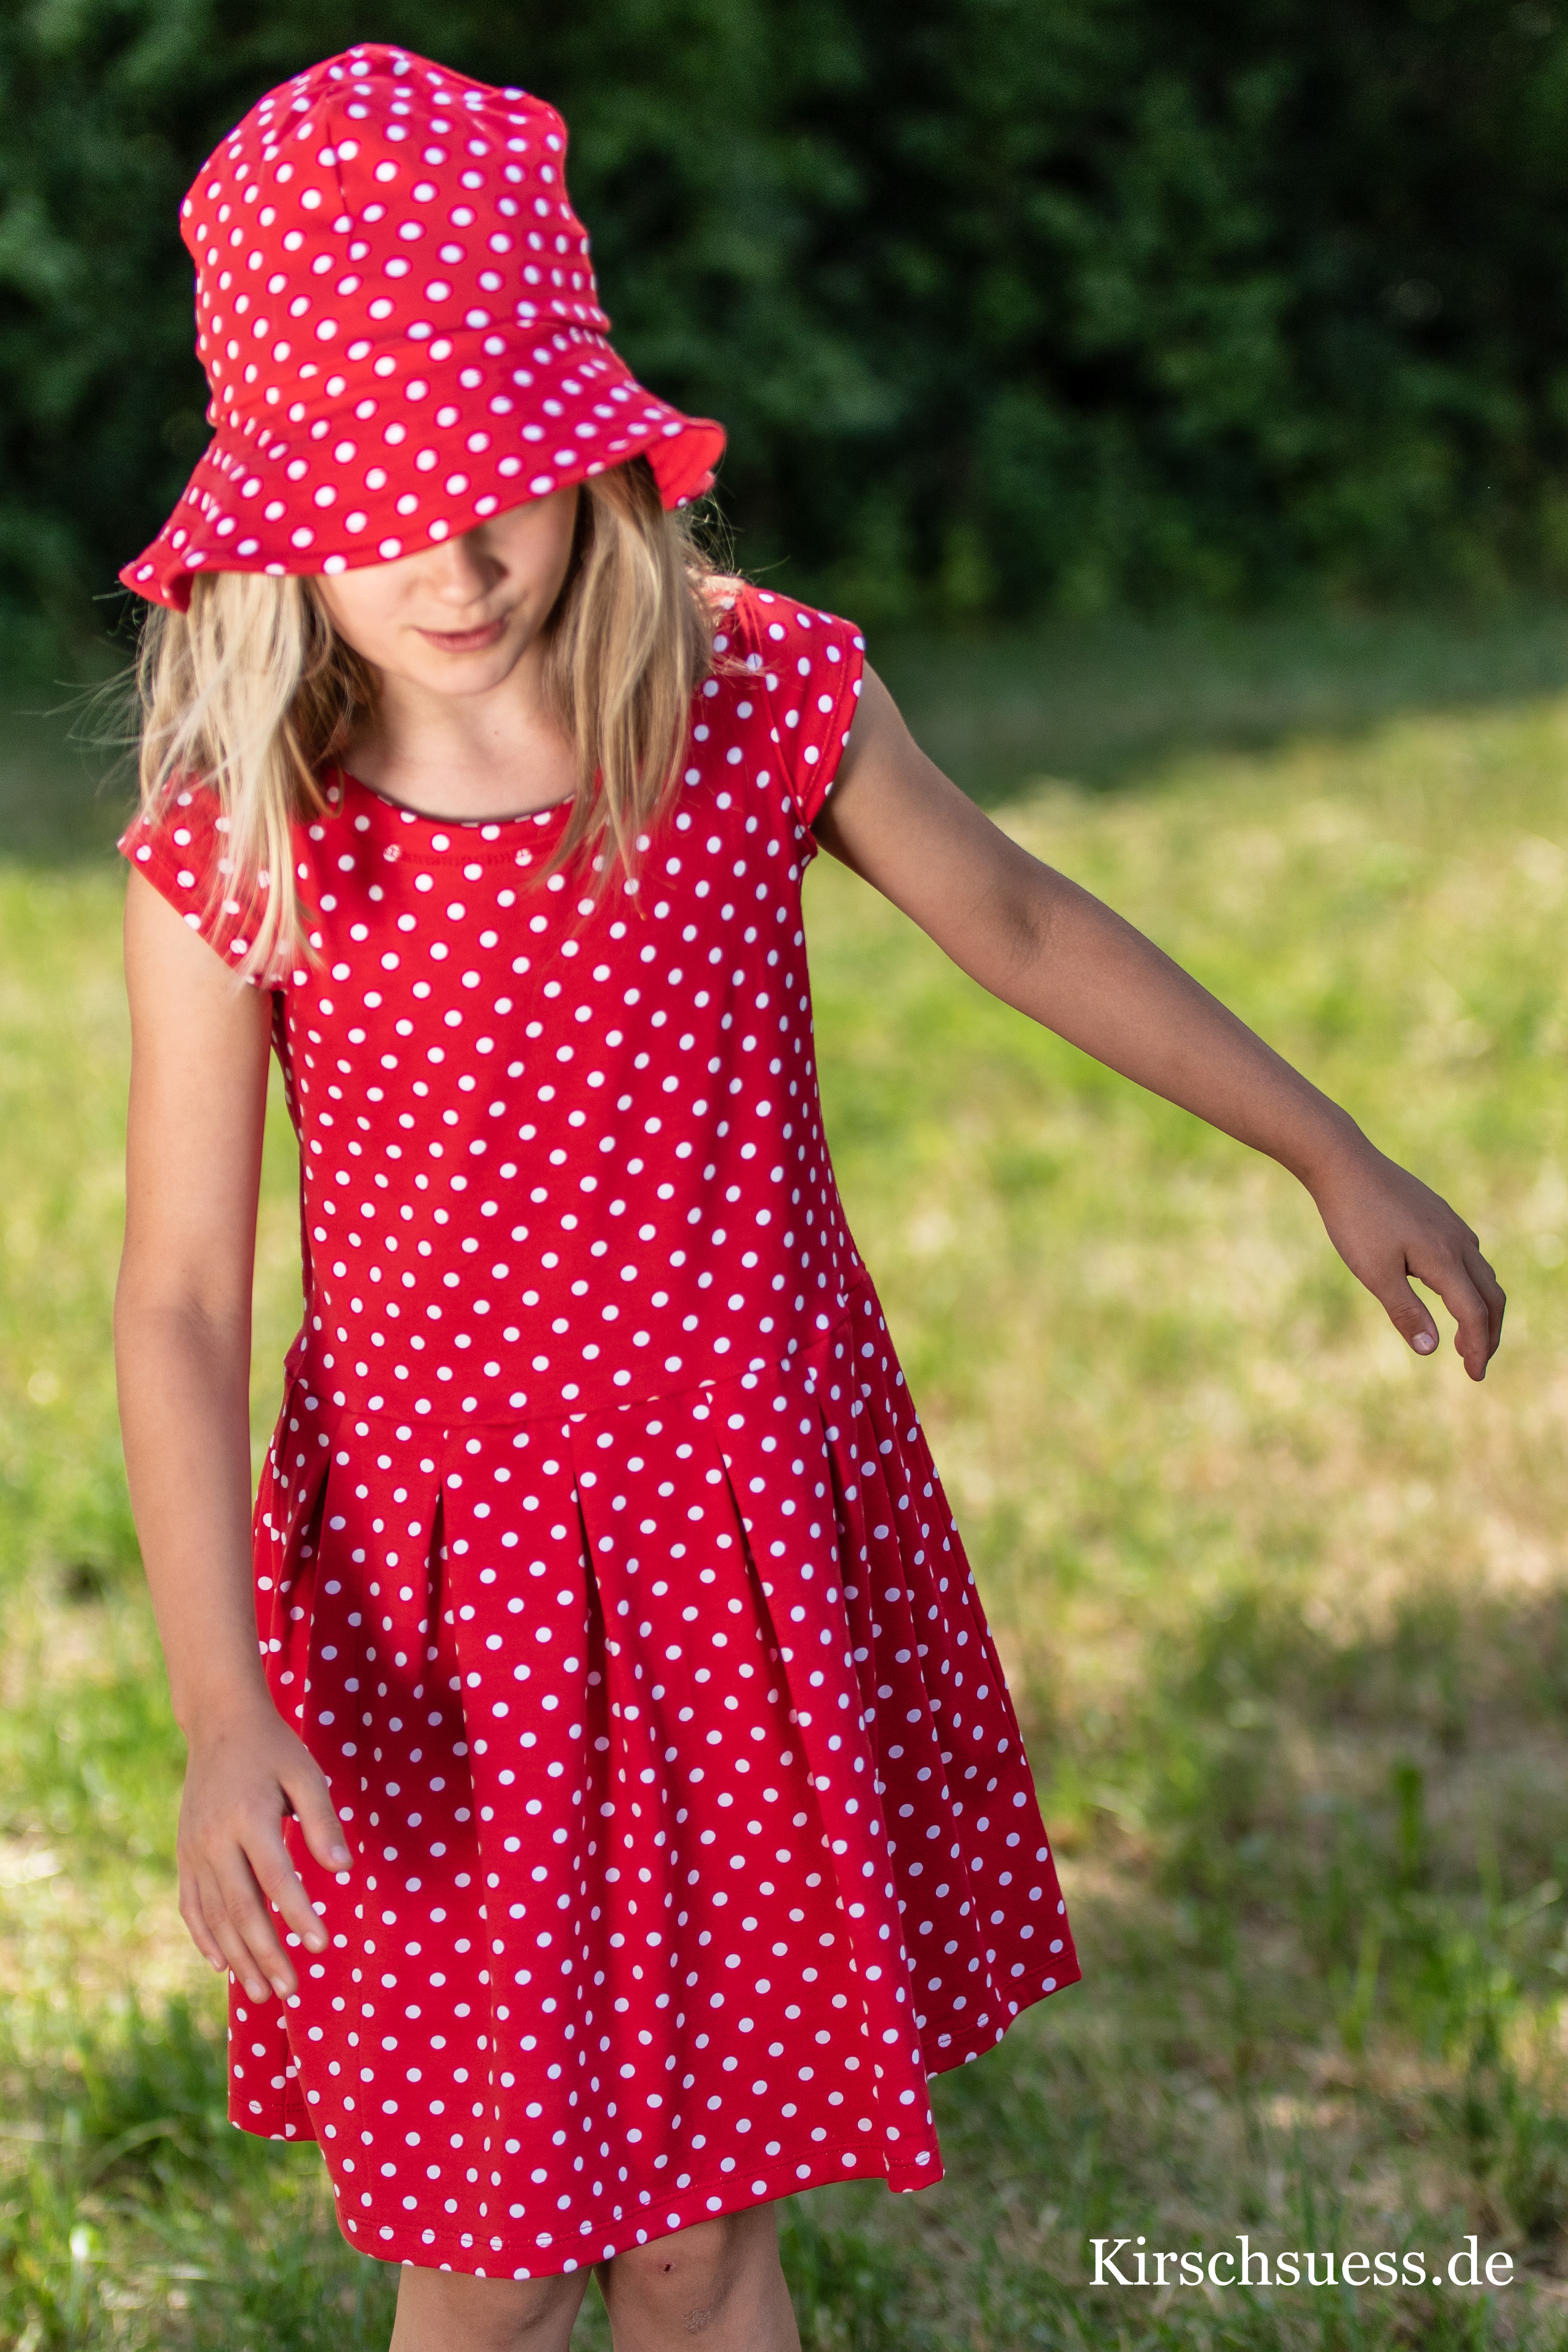 Children'S Red Dress With White Polka Dots – Makrelosi